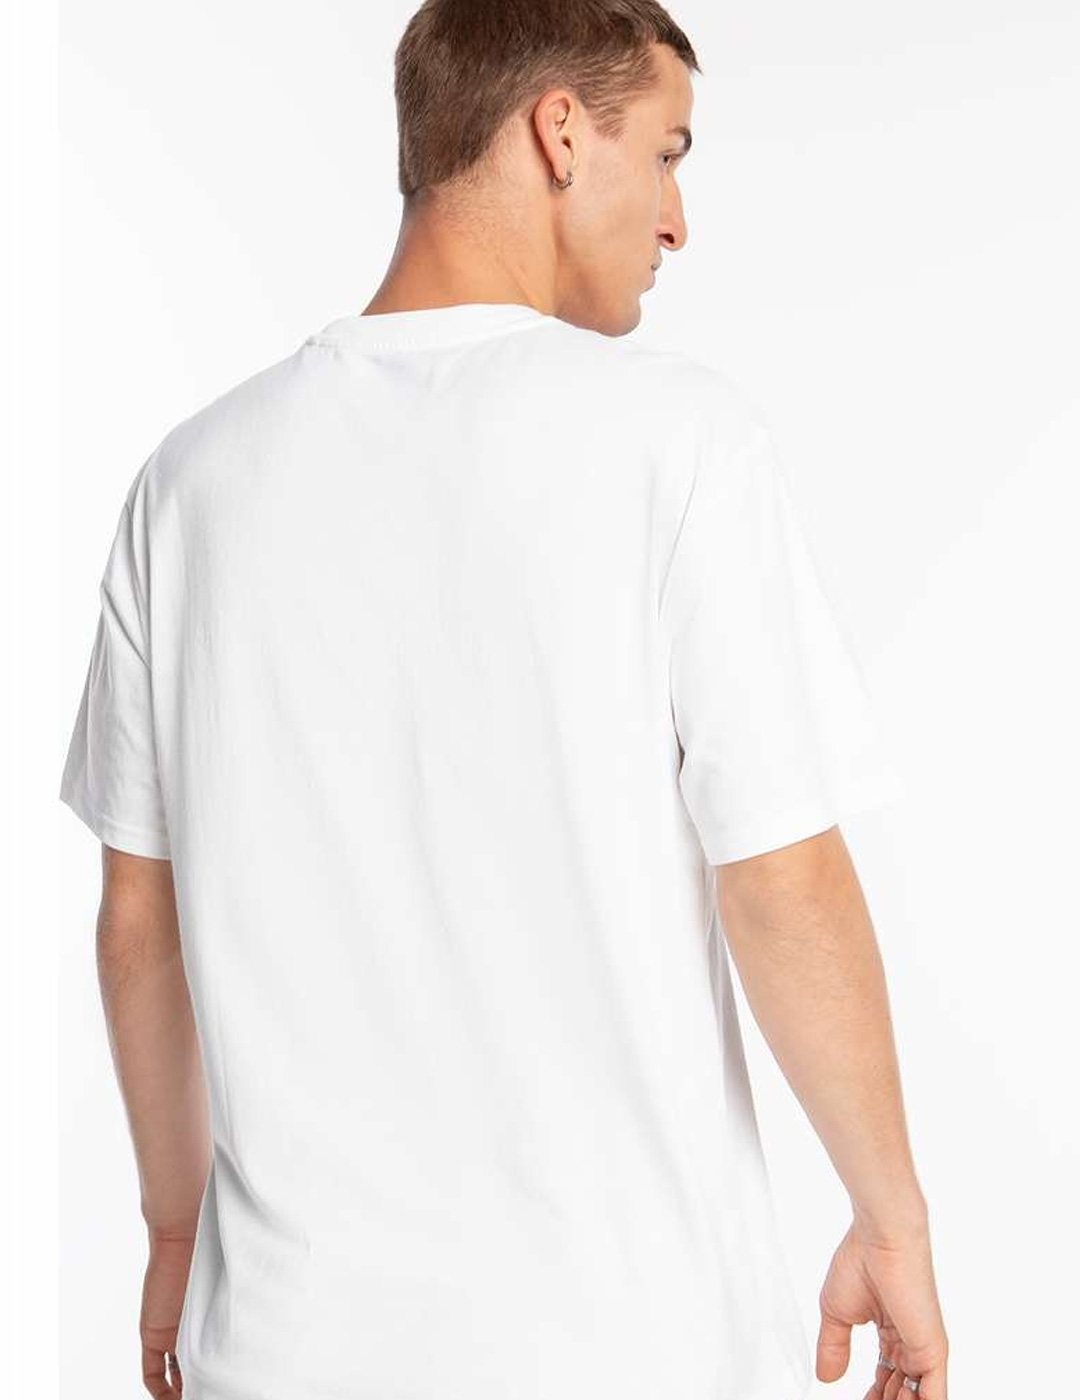 camiseta manga corta con bolsillo dickies hombre LURAY POCKET, blanco